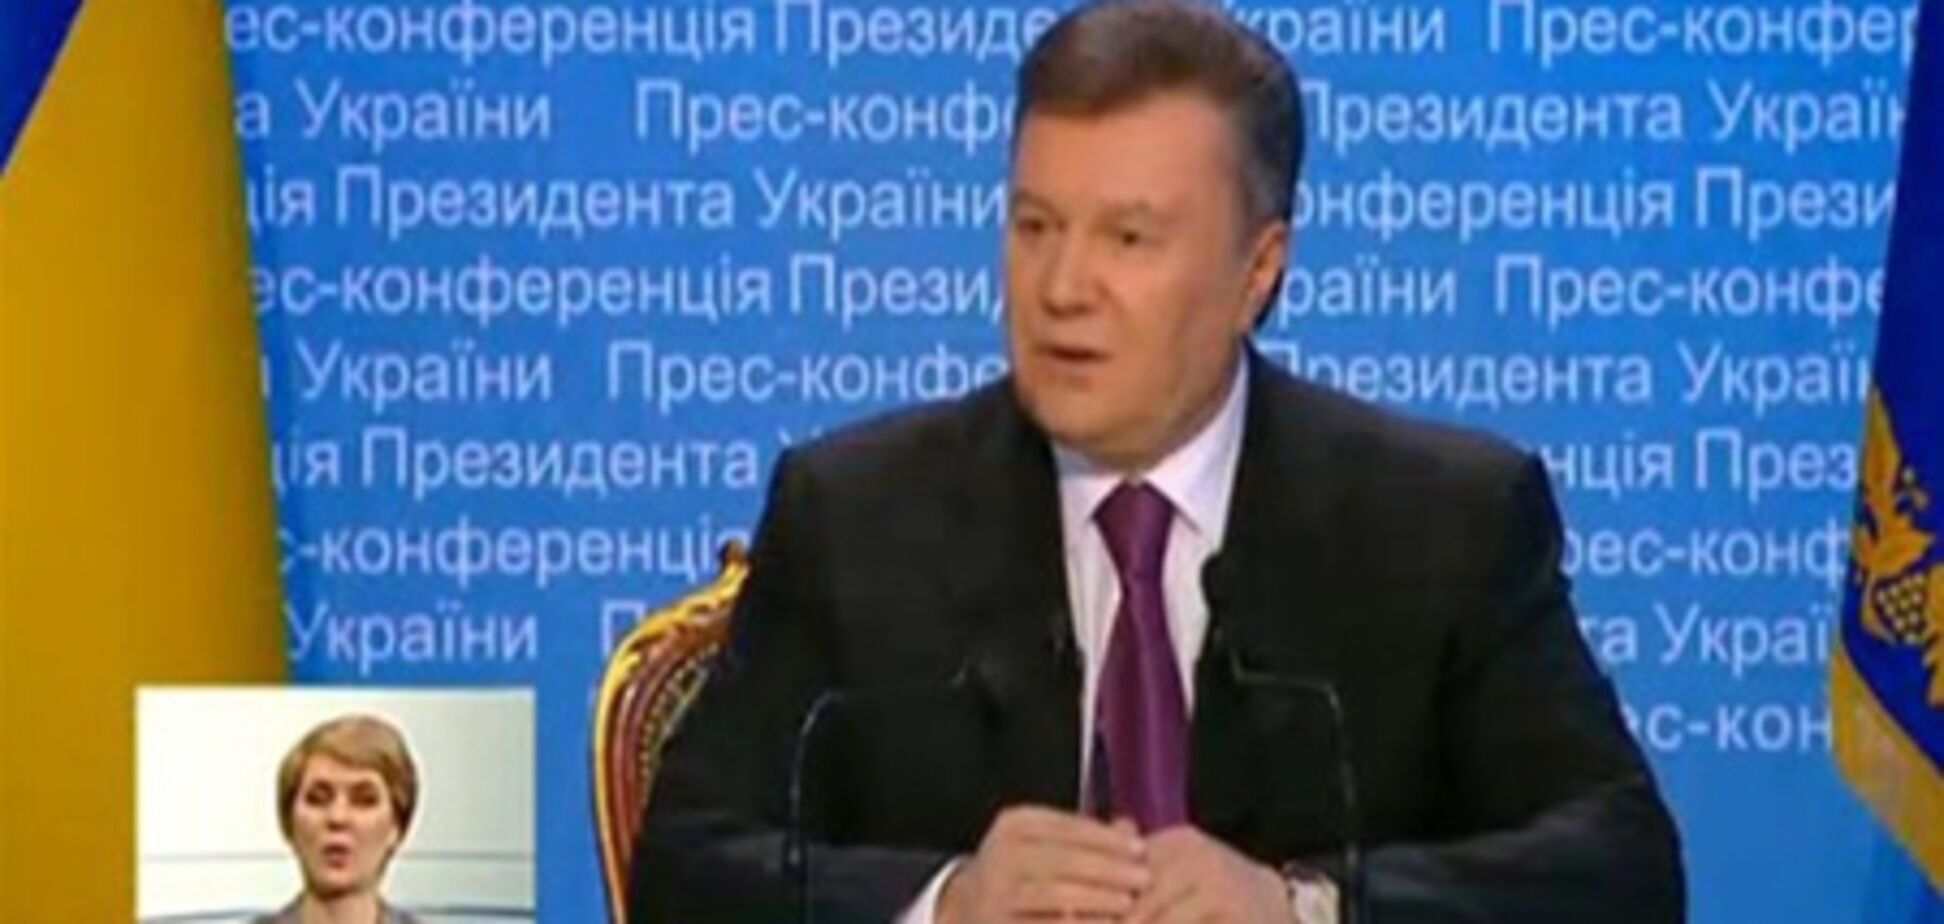 Янукович про Тимошенко: їй треба думати, як повернути борг. Відео